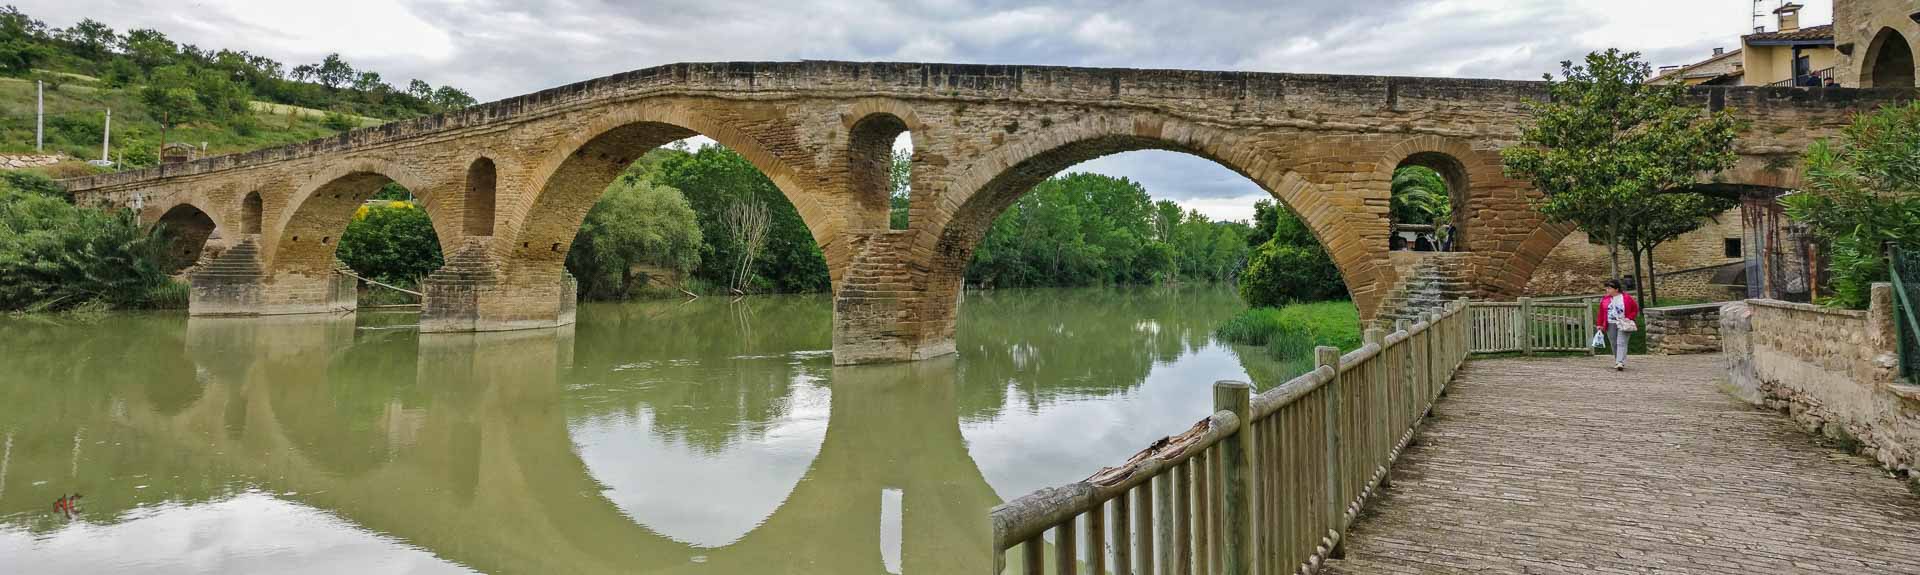 Tiebas-Puente la Reina. Camino Aragonés